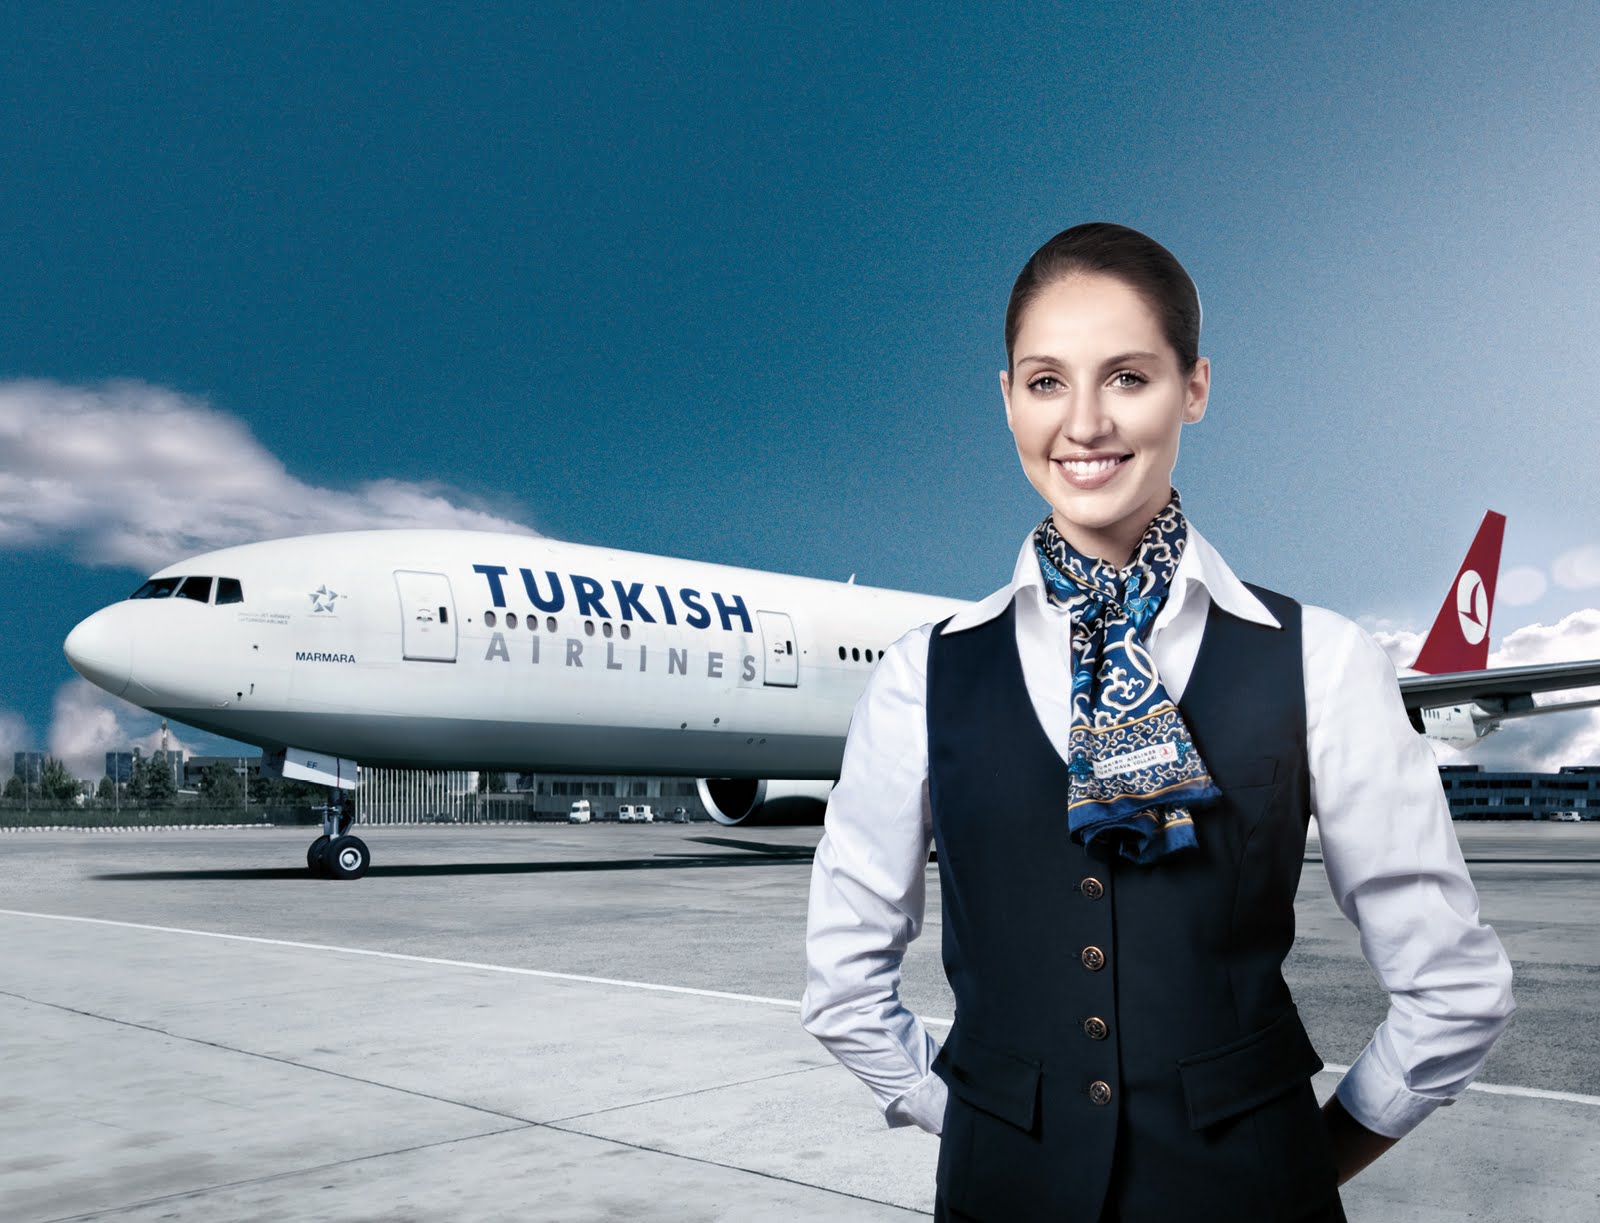 Türk Hava Yolları – Bulutların üzerinde bir kariyer fırsatı sizleri bekliyor!